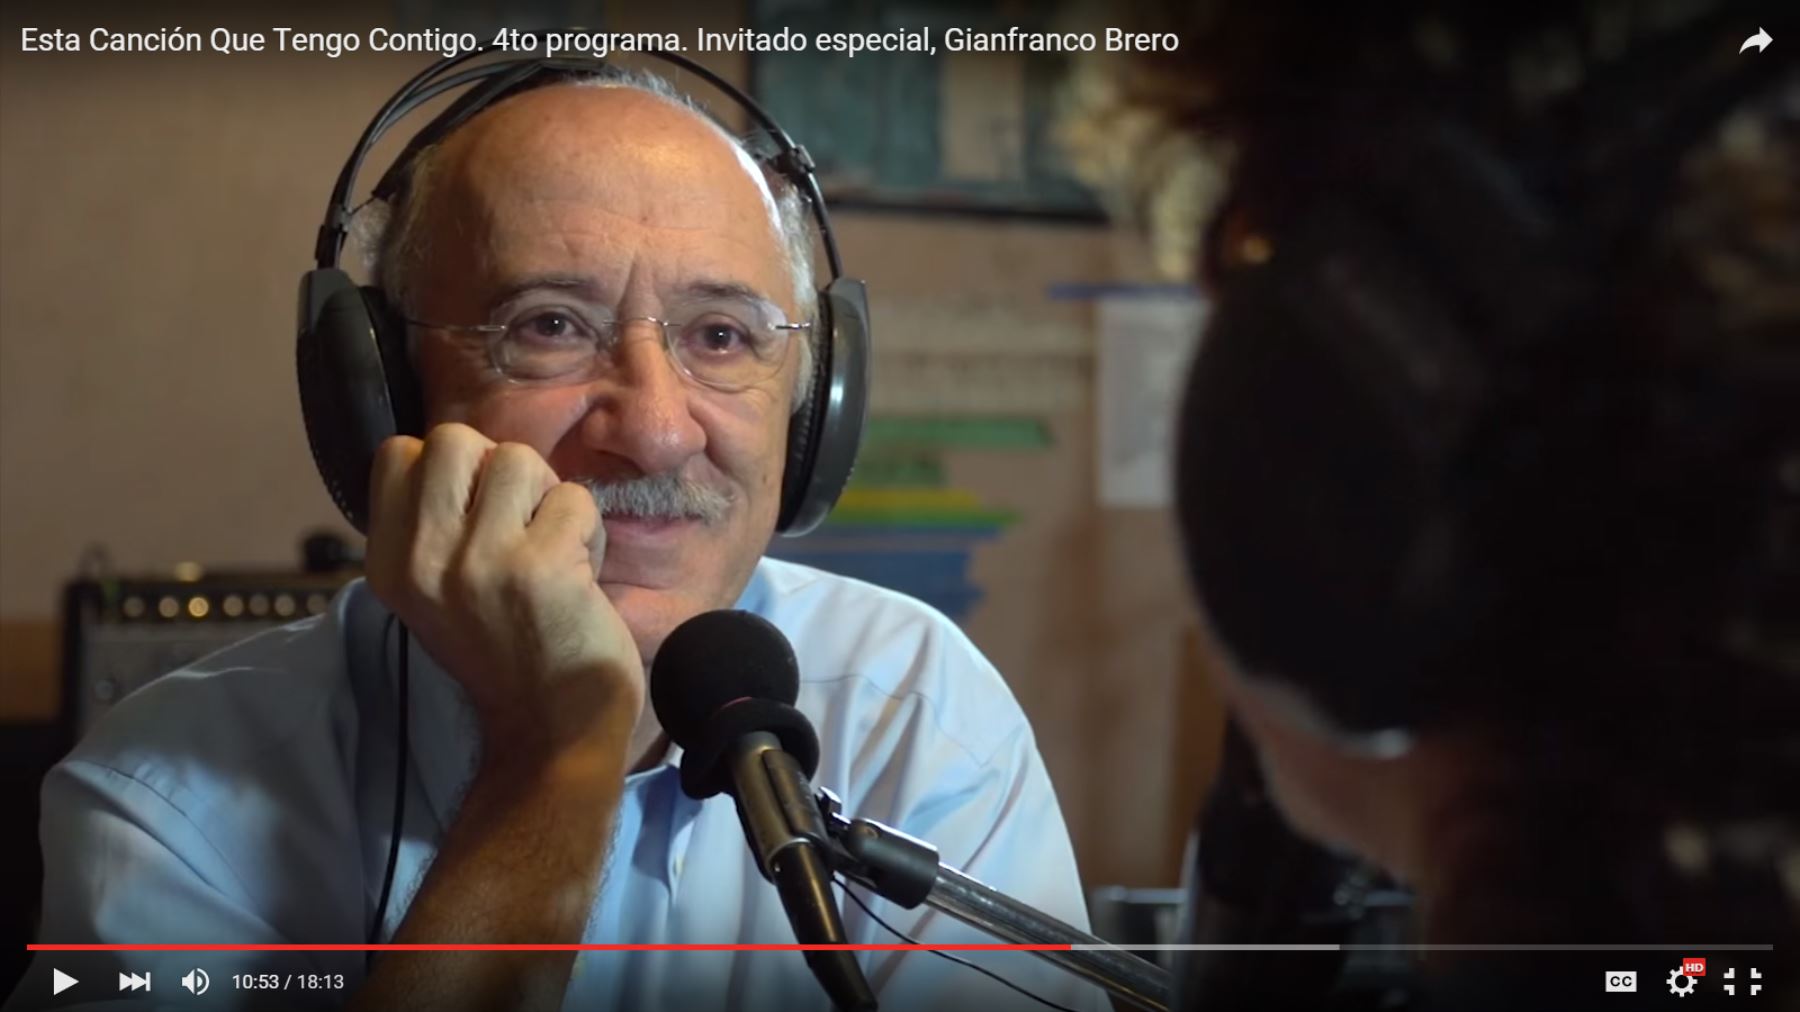 Gianfranco Brero se emocionó al escuchar una canción dedicada a su persona.